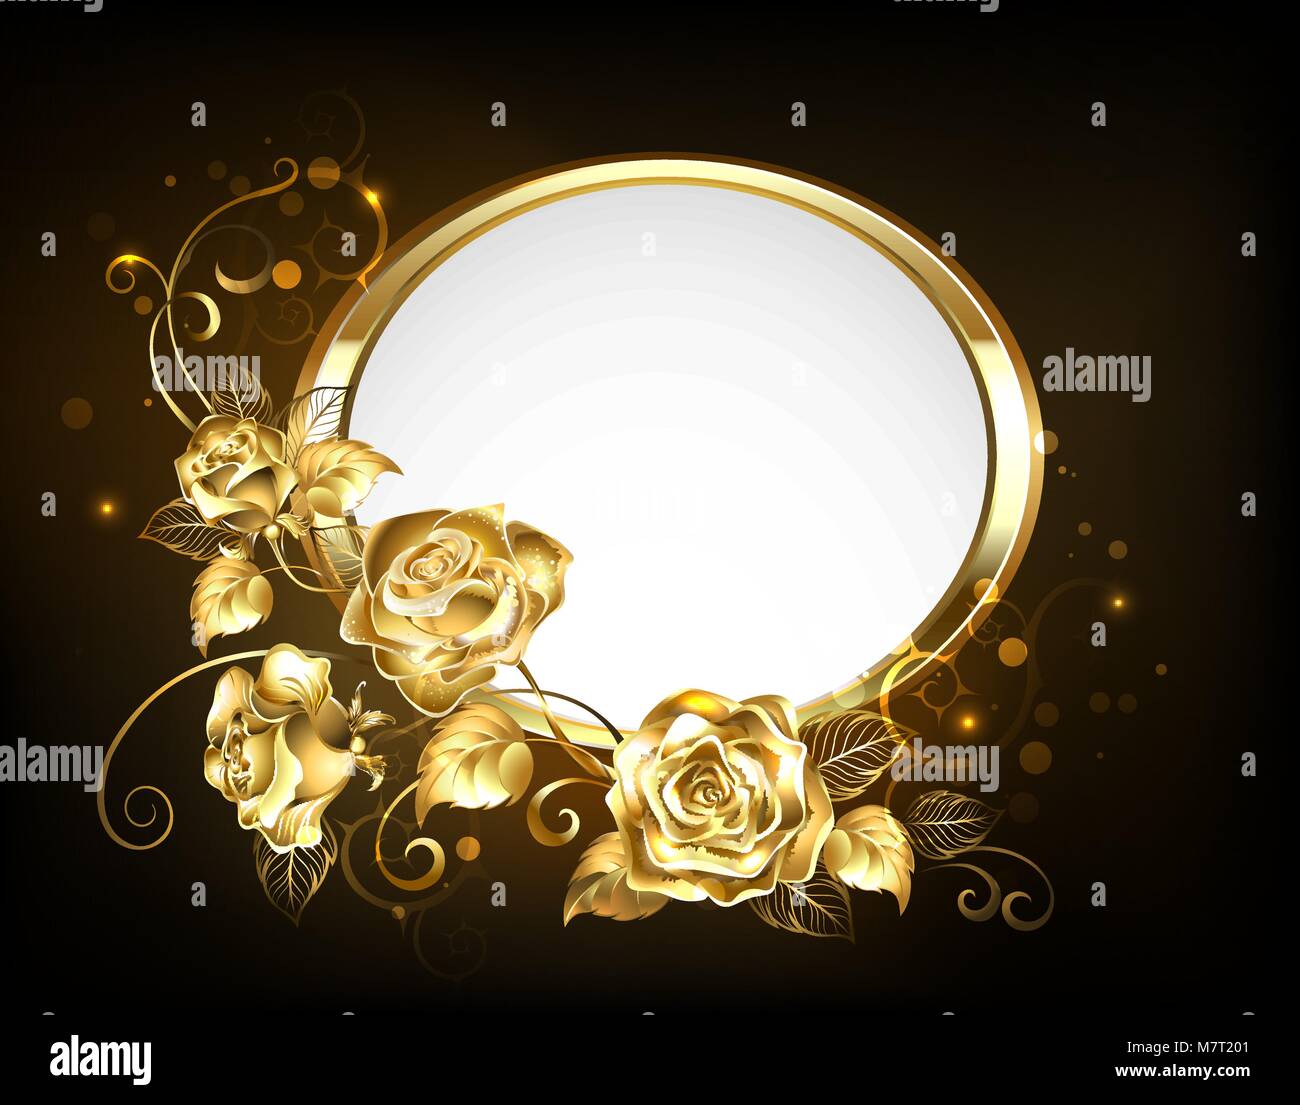 Oval Banner mit Goldrahmen geschmückt mit Gold, Juwelen, verflochten Rosen mit Blattgold auf schwarzen Hintergrund. Gold stieg. Stock Vektor